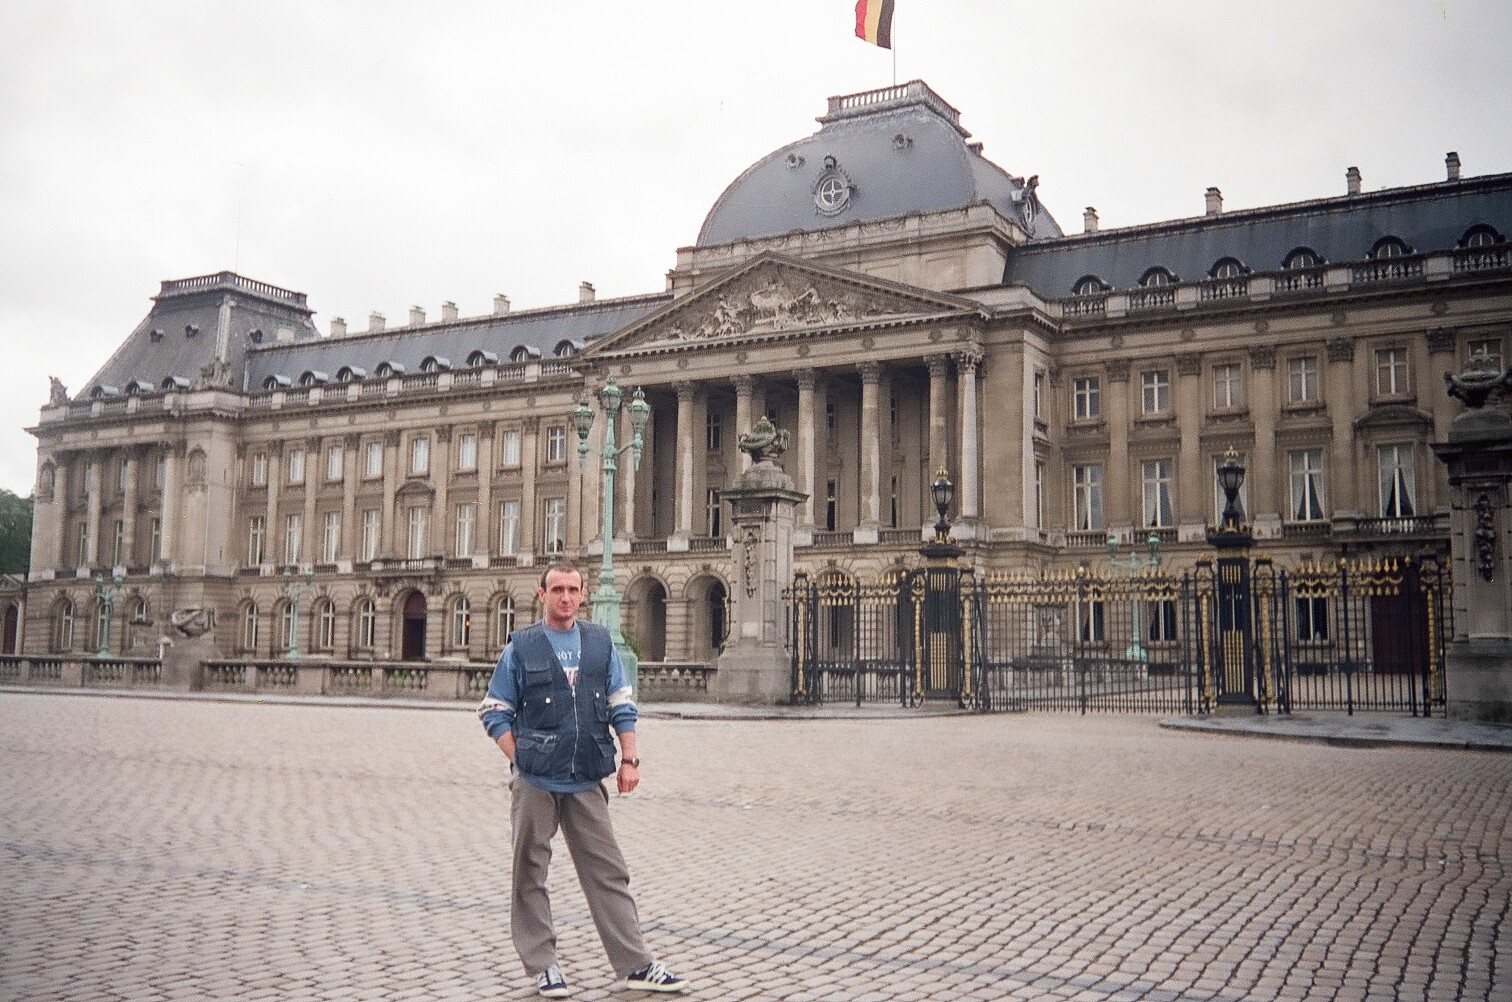 Брюссель, Королевский дворец. Поднятый флаг означает, что король во дворце…